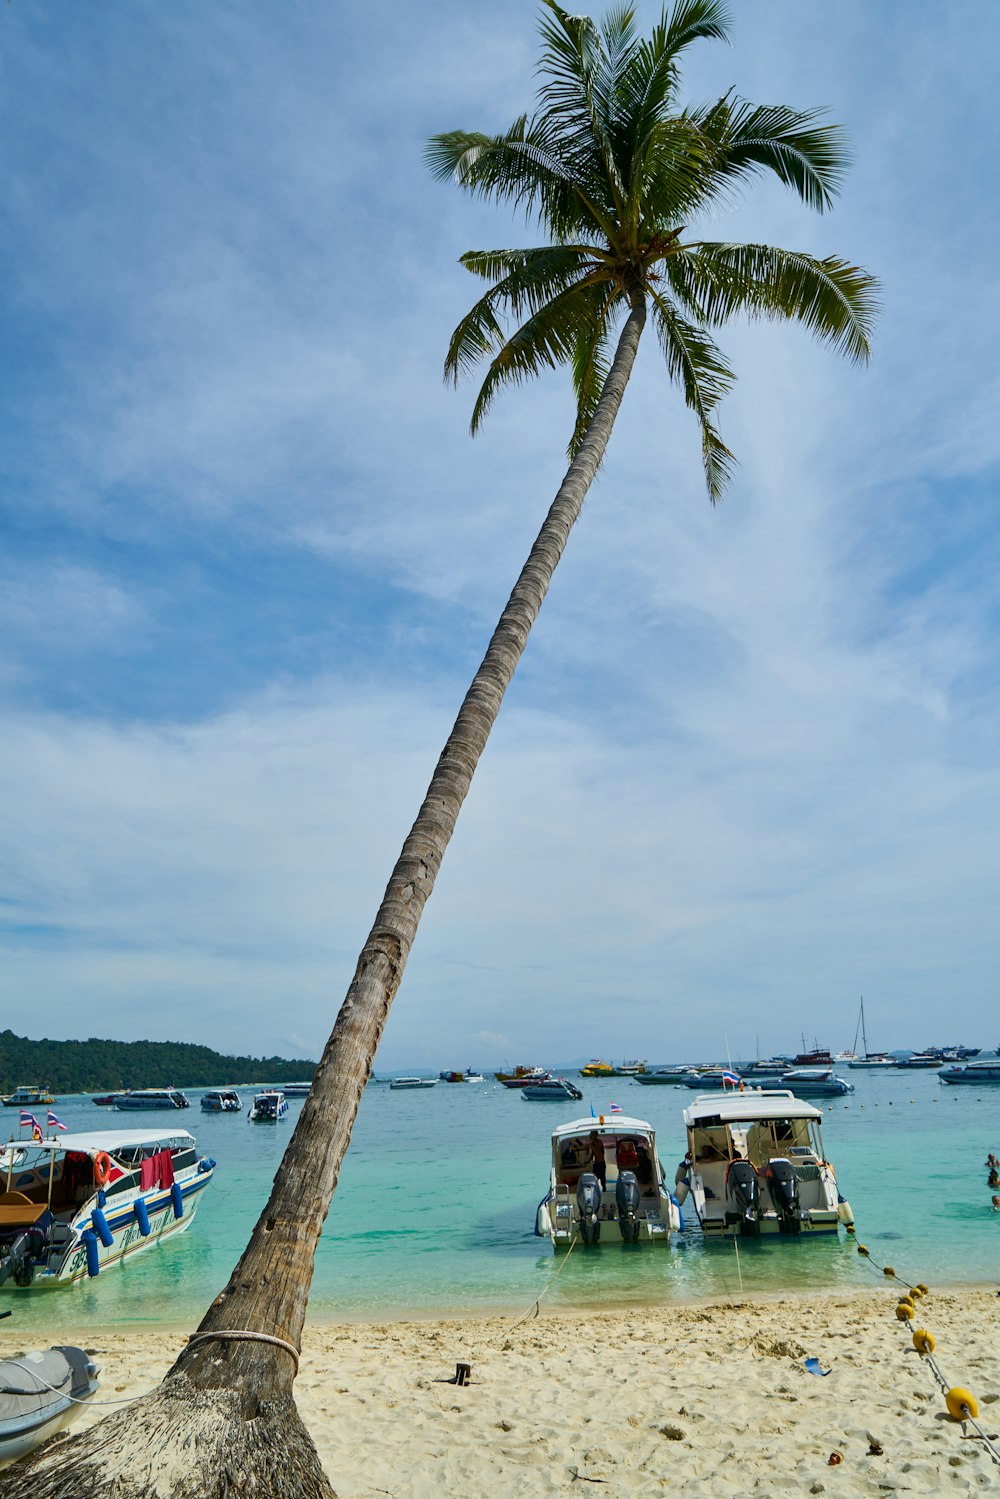 Un palmier sur une plage avec des bateaux dans l’eau